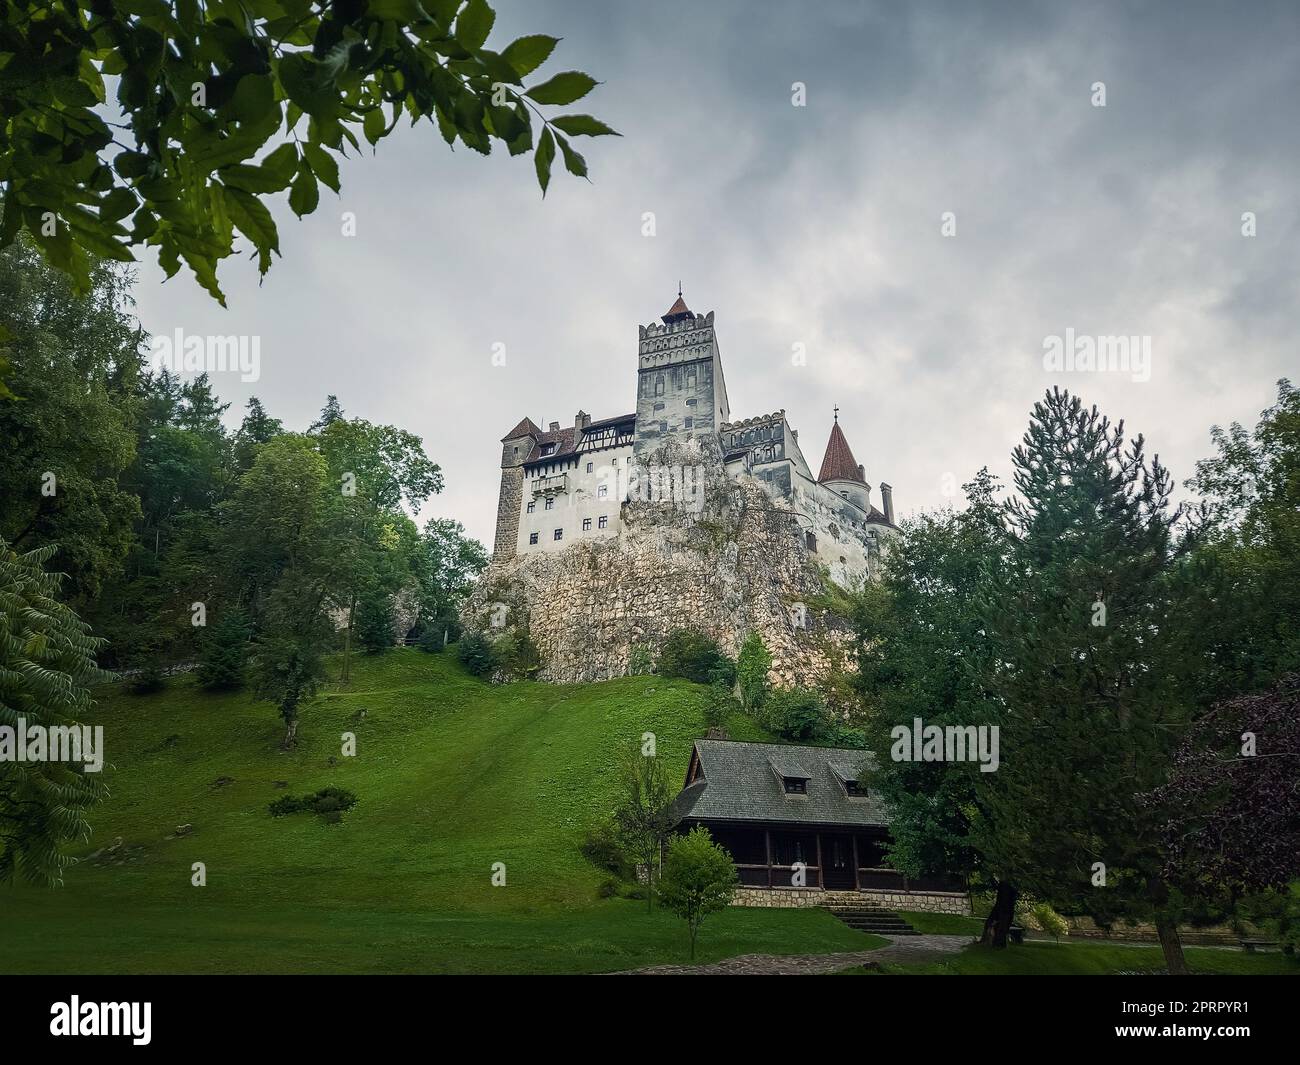 La forteresse médiévale de Bran connue sous le nom de château Dracula en Transylvanie, Roumanie. Bastion historique de style saxon au cœur des montagnes carpathes Banque D'Images